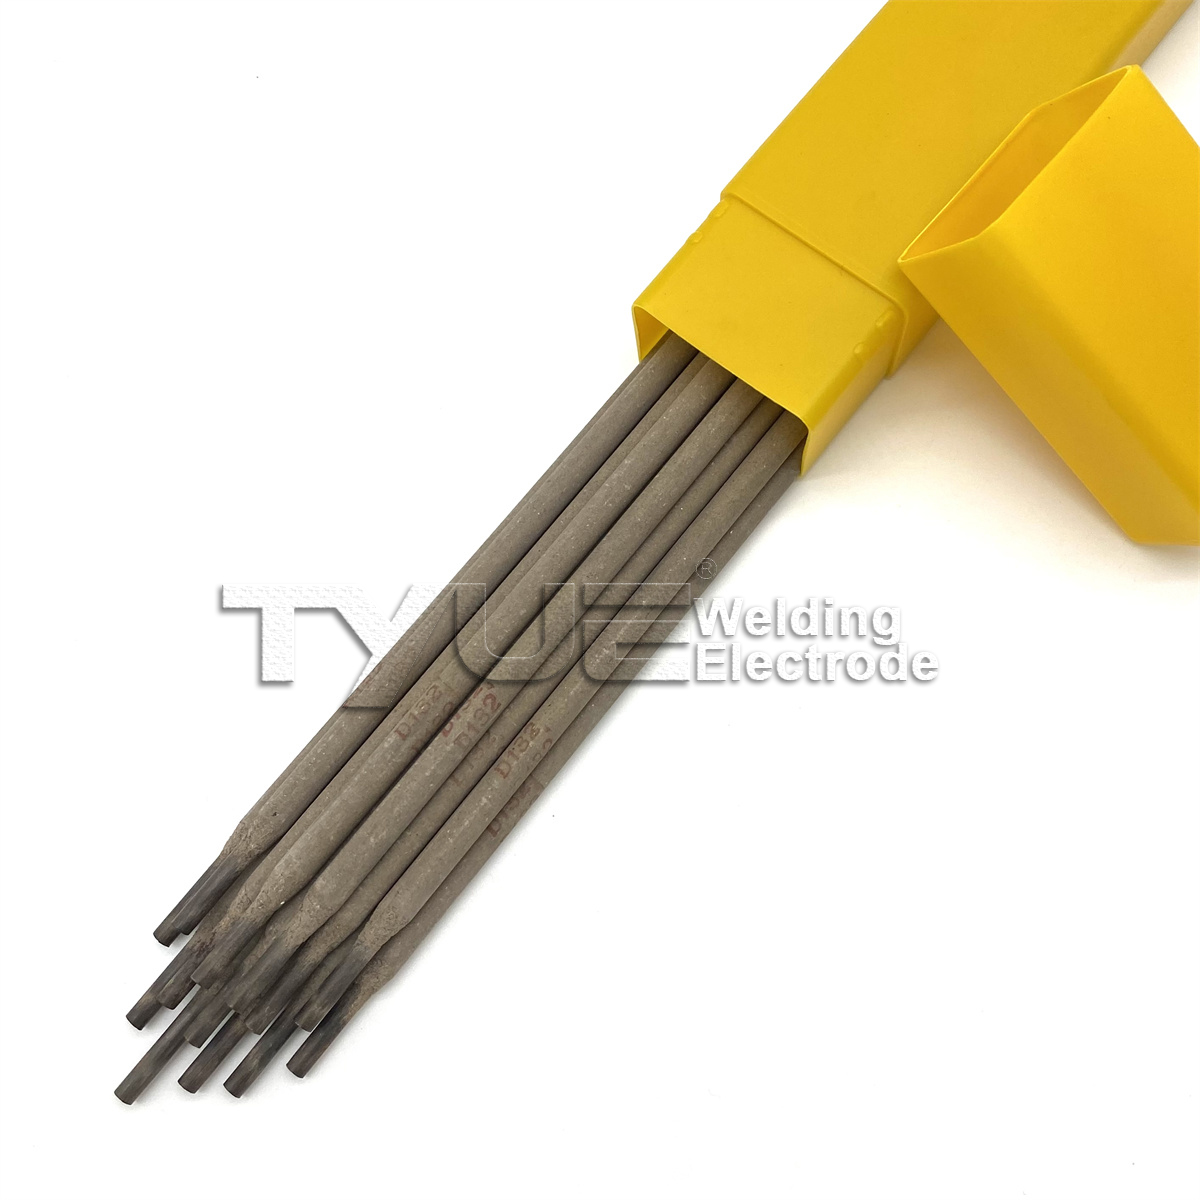 D132 (B-83) Hardfacing Welding Elektrode, Surfacing Welding Rod, Arc Welding Stick